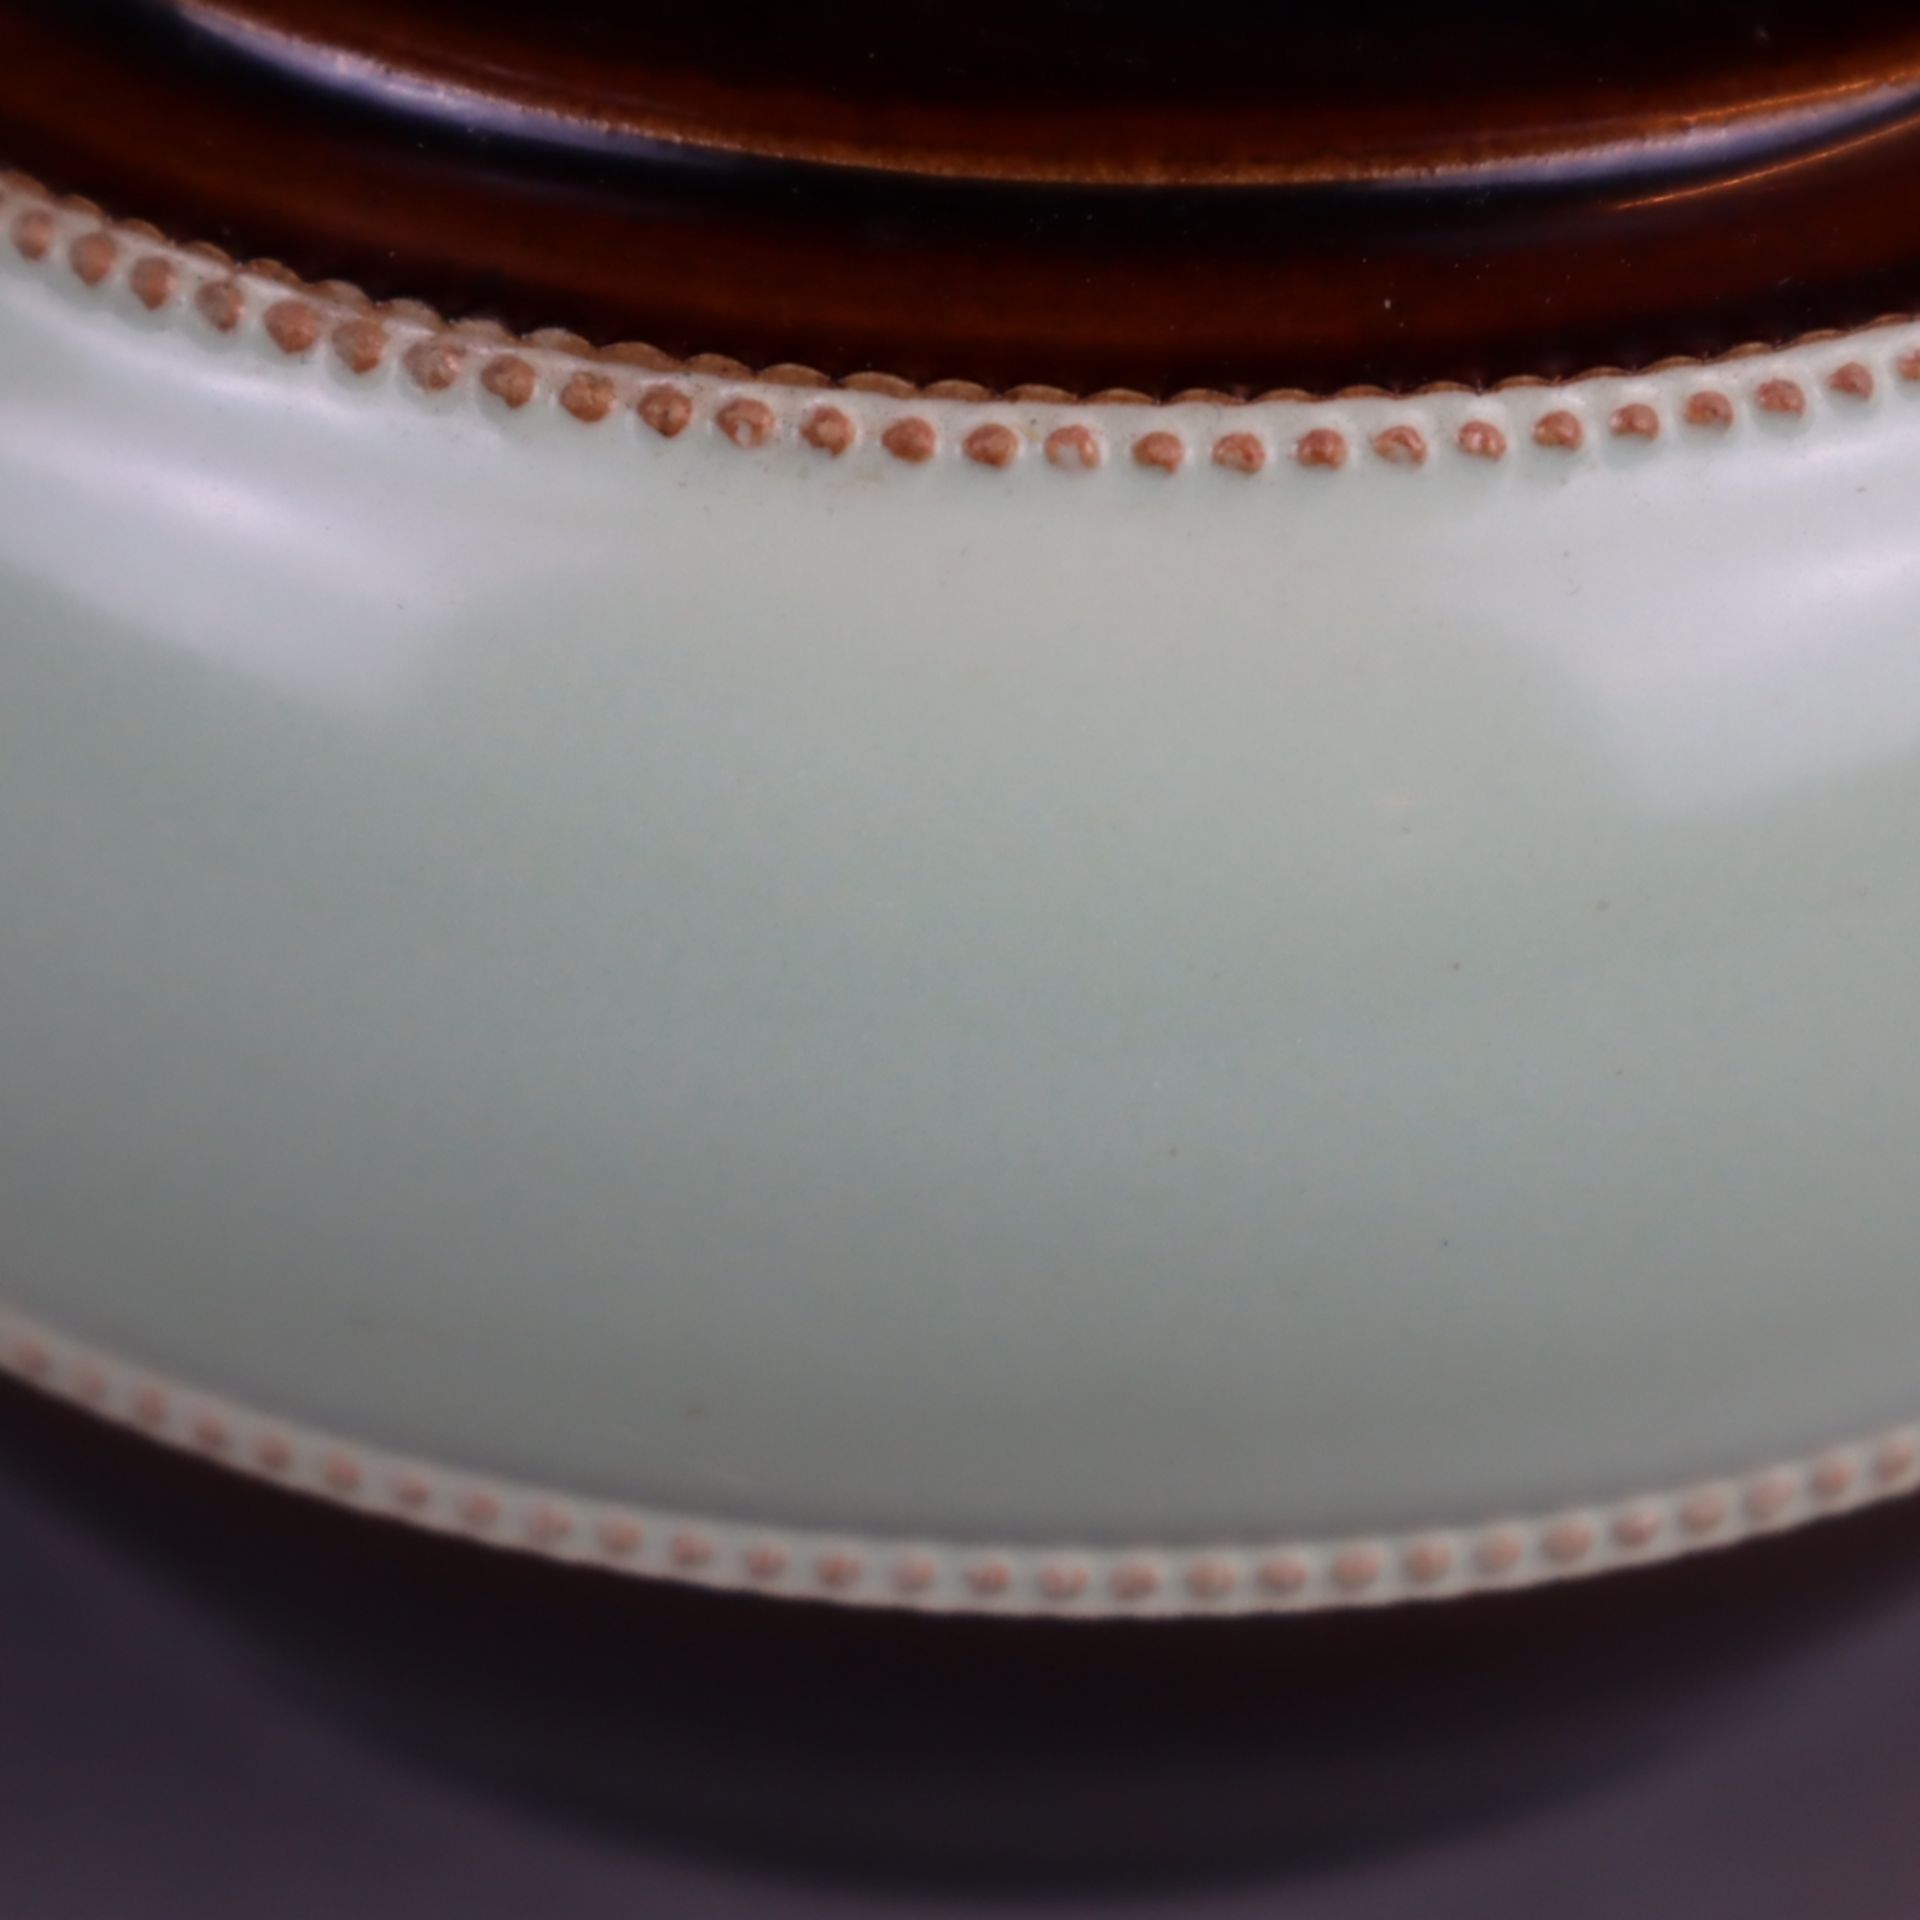 Keramik-Tabaktopf - sandfarbener Scherben, Glasur in Braun und Lindgrün, gebauchte Wandung auf zurü - Bild 4 aus 5